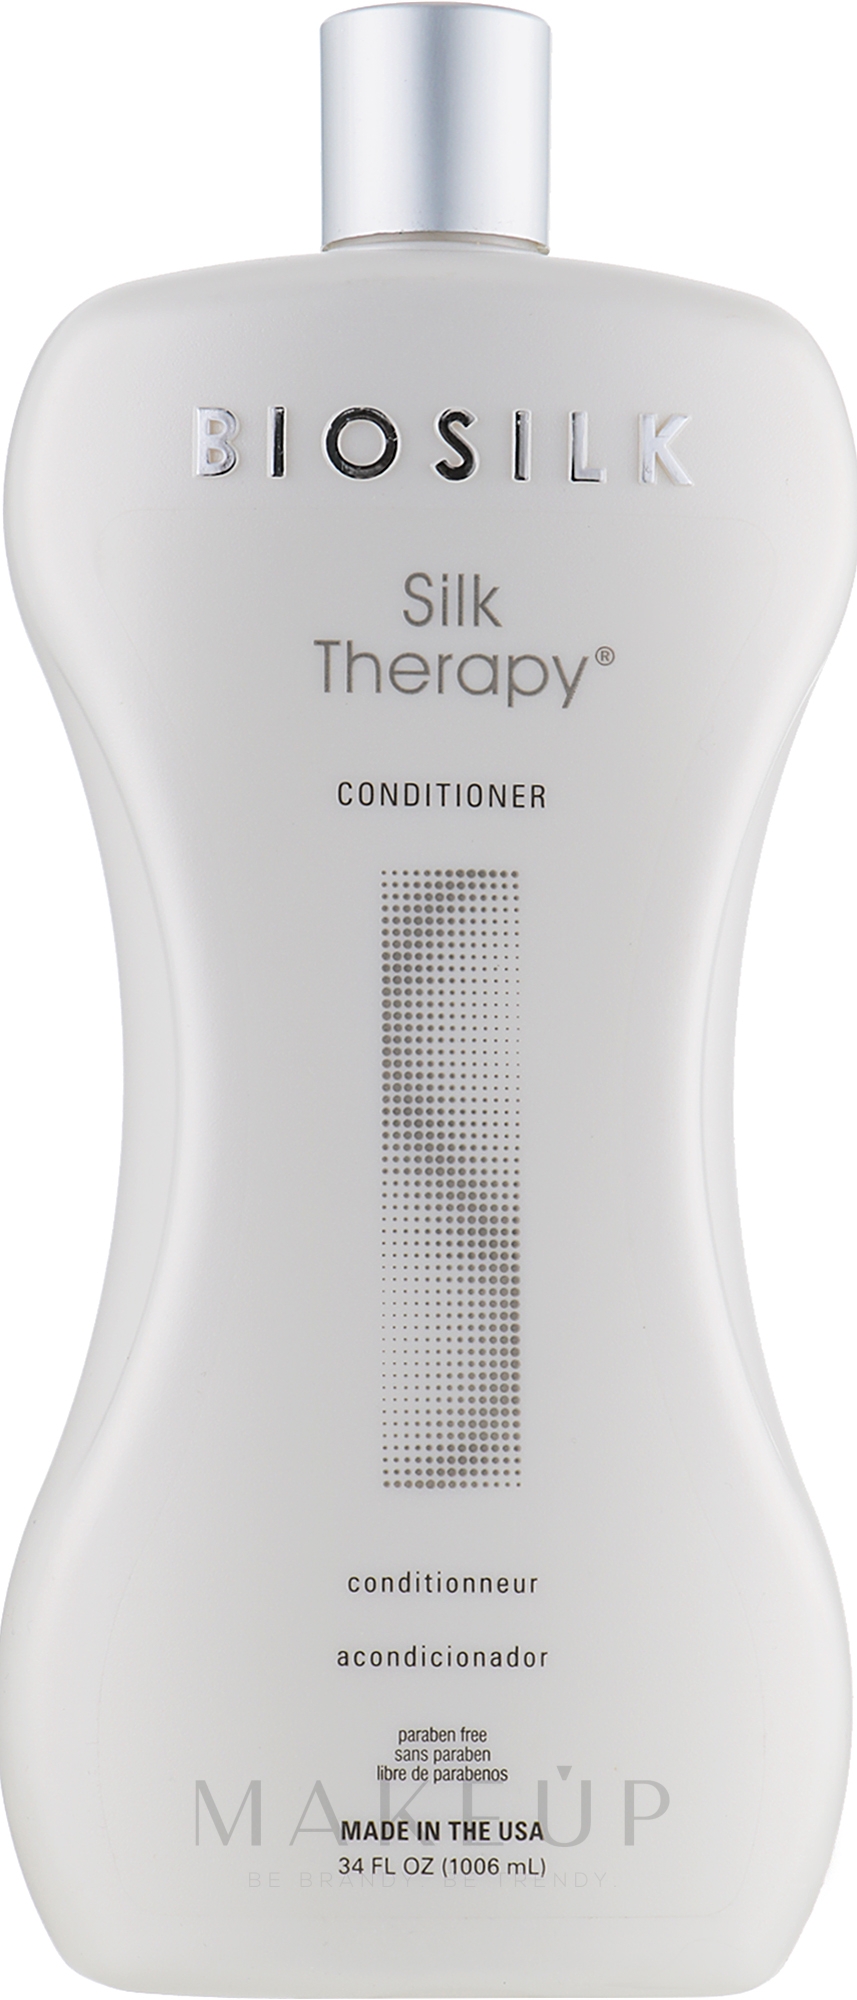 Haarspülung mit pflanzlichen Extrakten und Kräutern - BioSilk Silk Therapy Conditioner — Foto 1006 ml